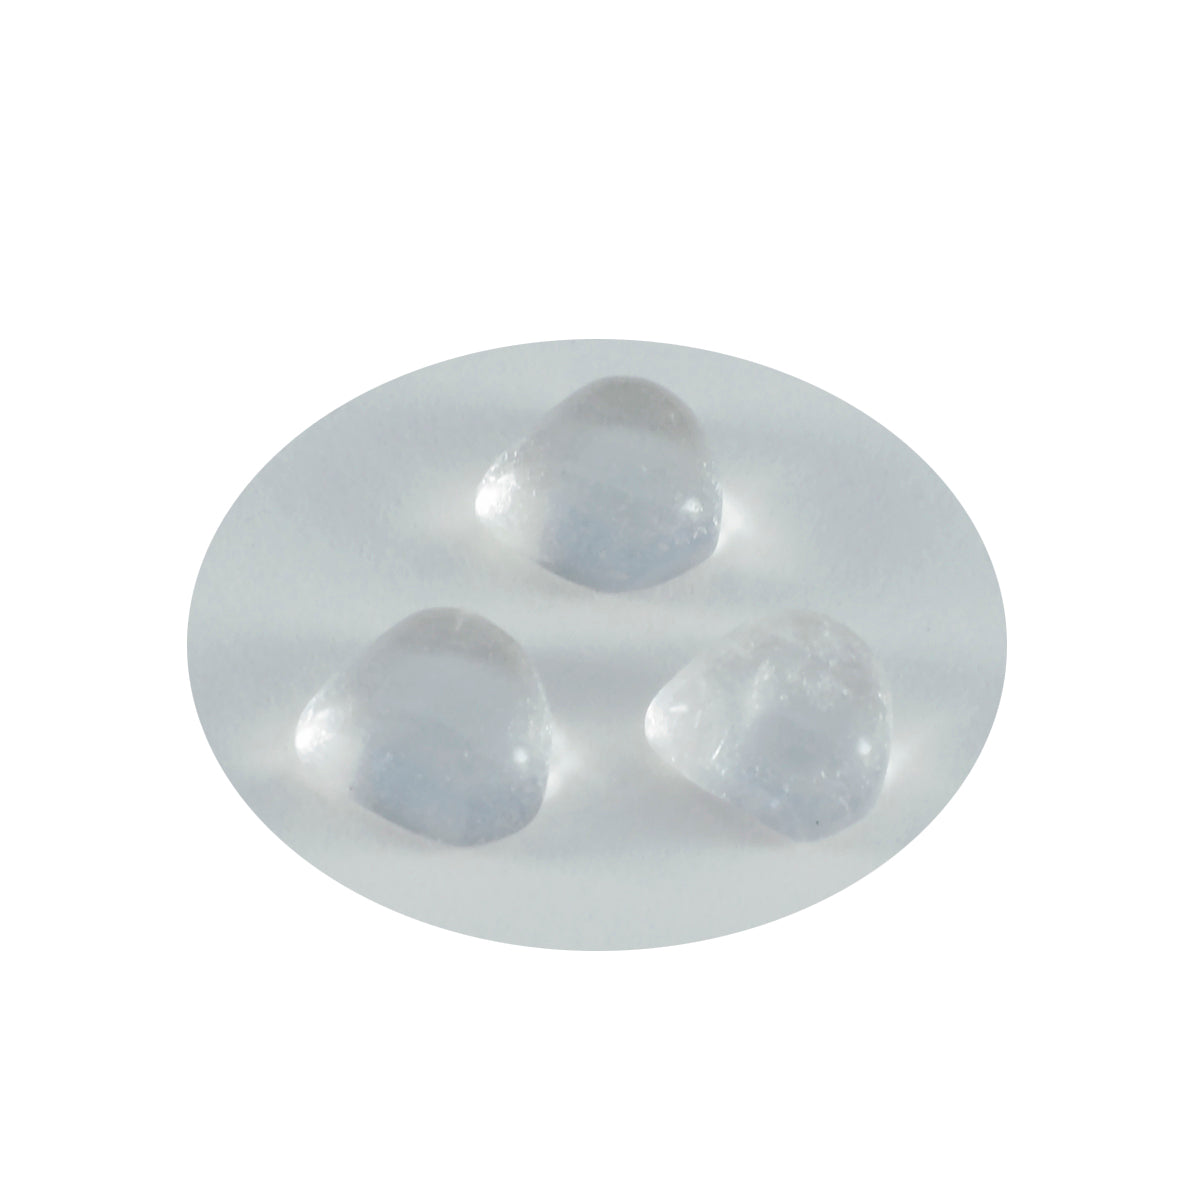 Riyogems 1 cabochon de quartz en cristal blanc 14 x 14 mm en forme de cœur a + 1 pierre précieuse de qualité